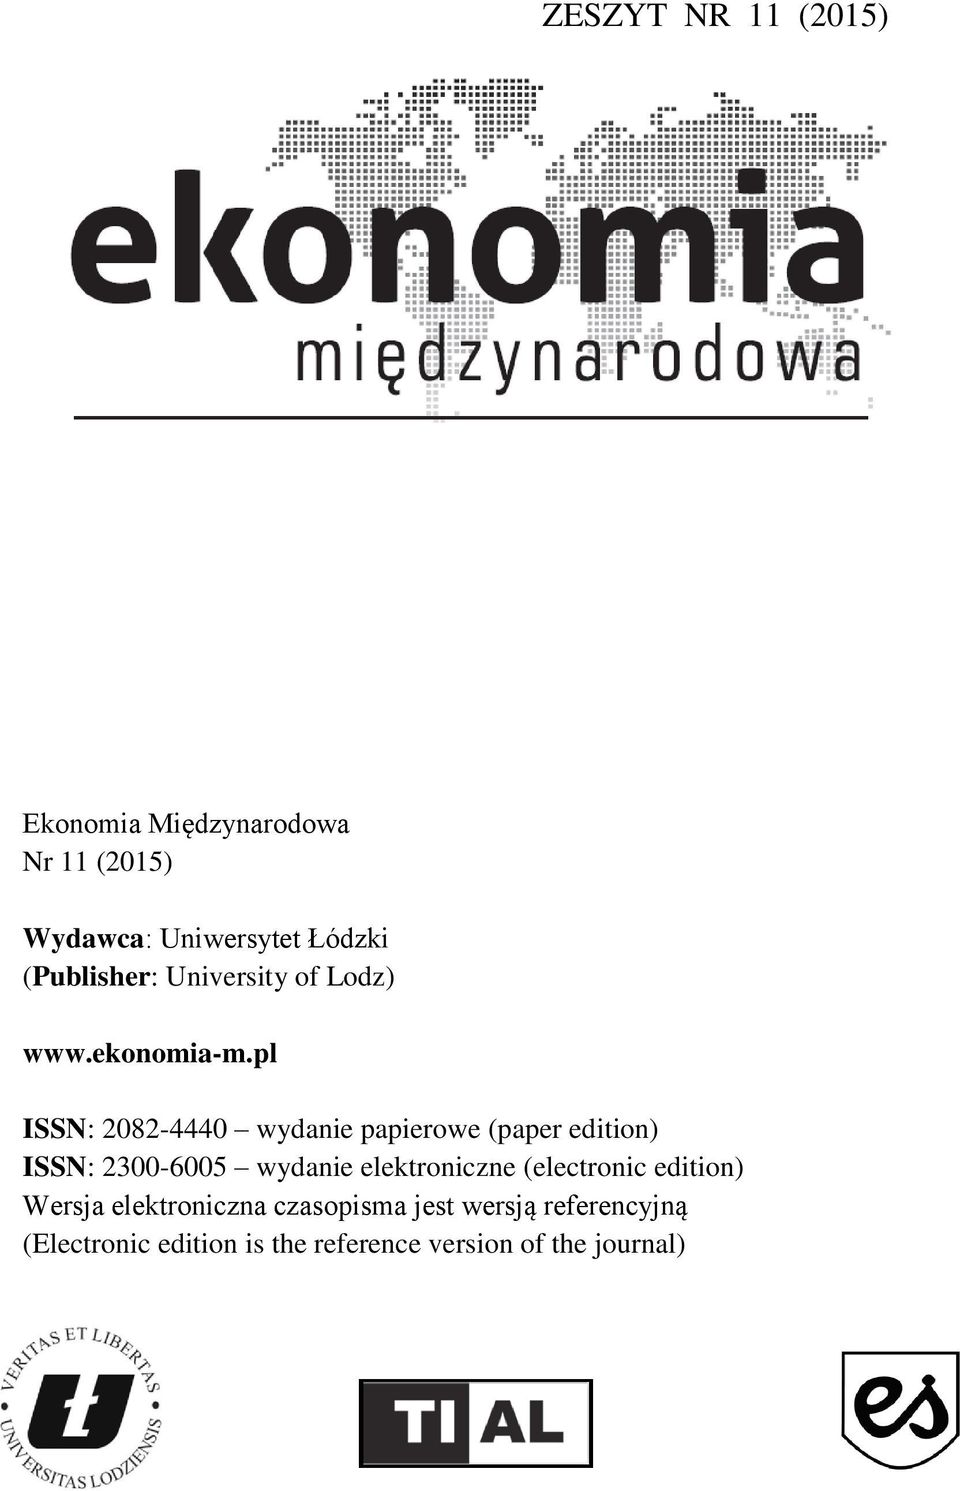 pl ISSN: 2082-4440 wydanie papierowe (paper edition) ISSN: 2300-6005 wydanie elektroniczne